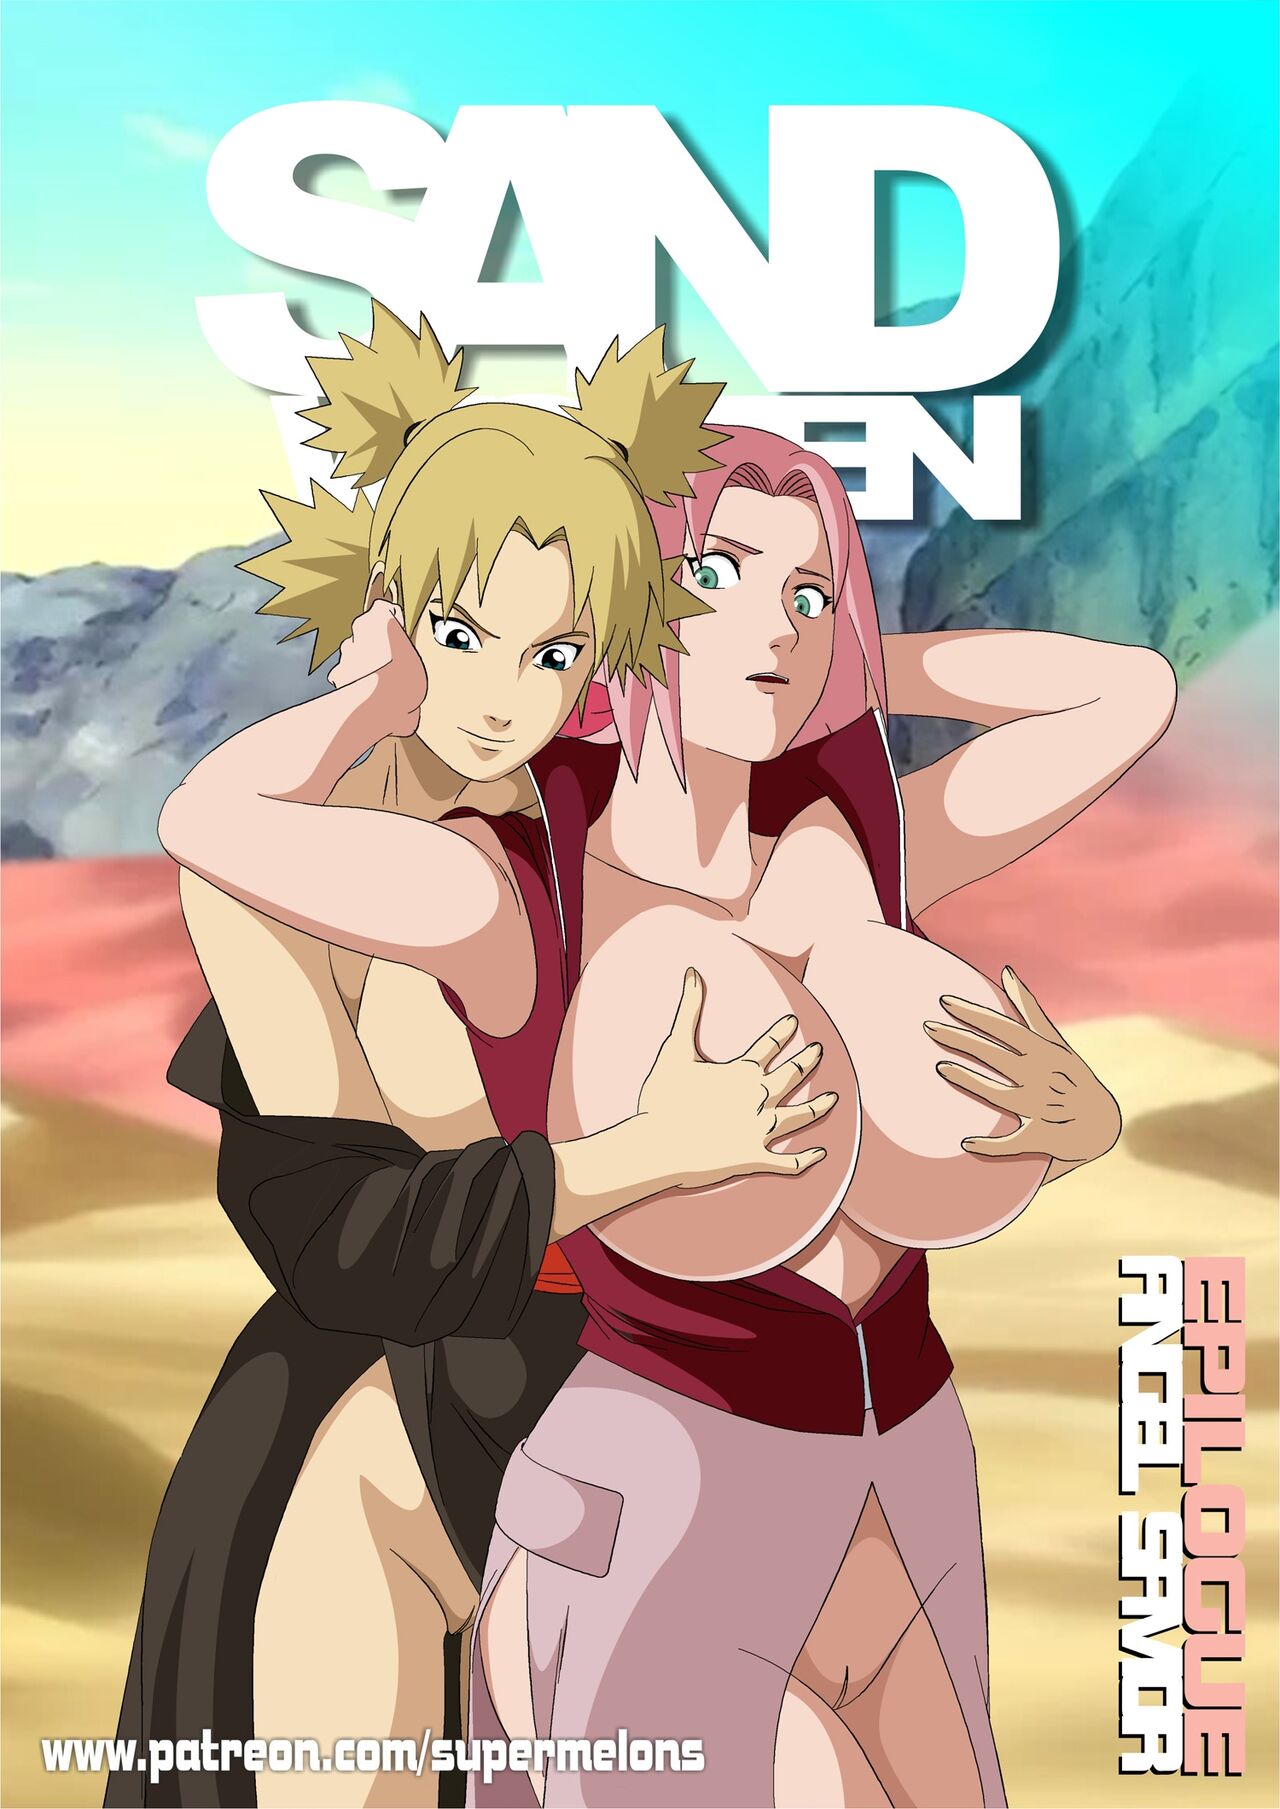 Naruto Women Porn - Sand Women - Angel Savior: Epilogue (Naruto) - Porn Cartoon Comics